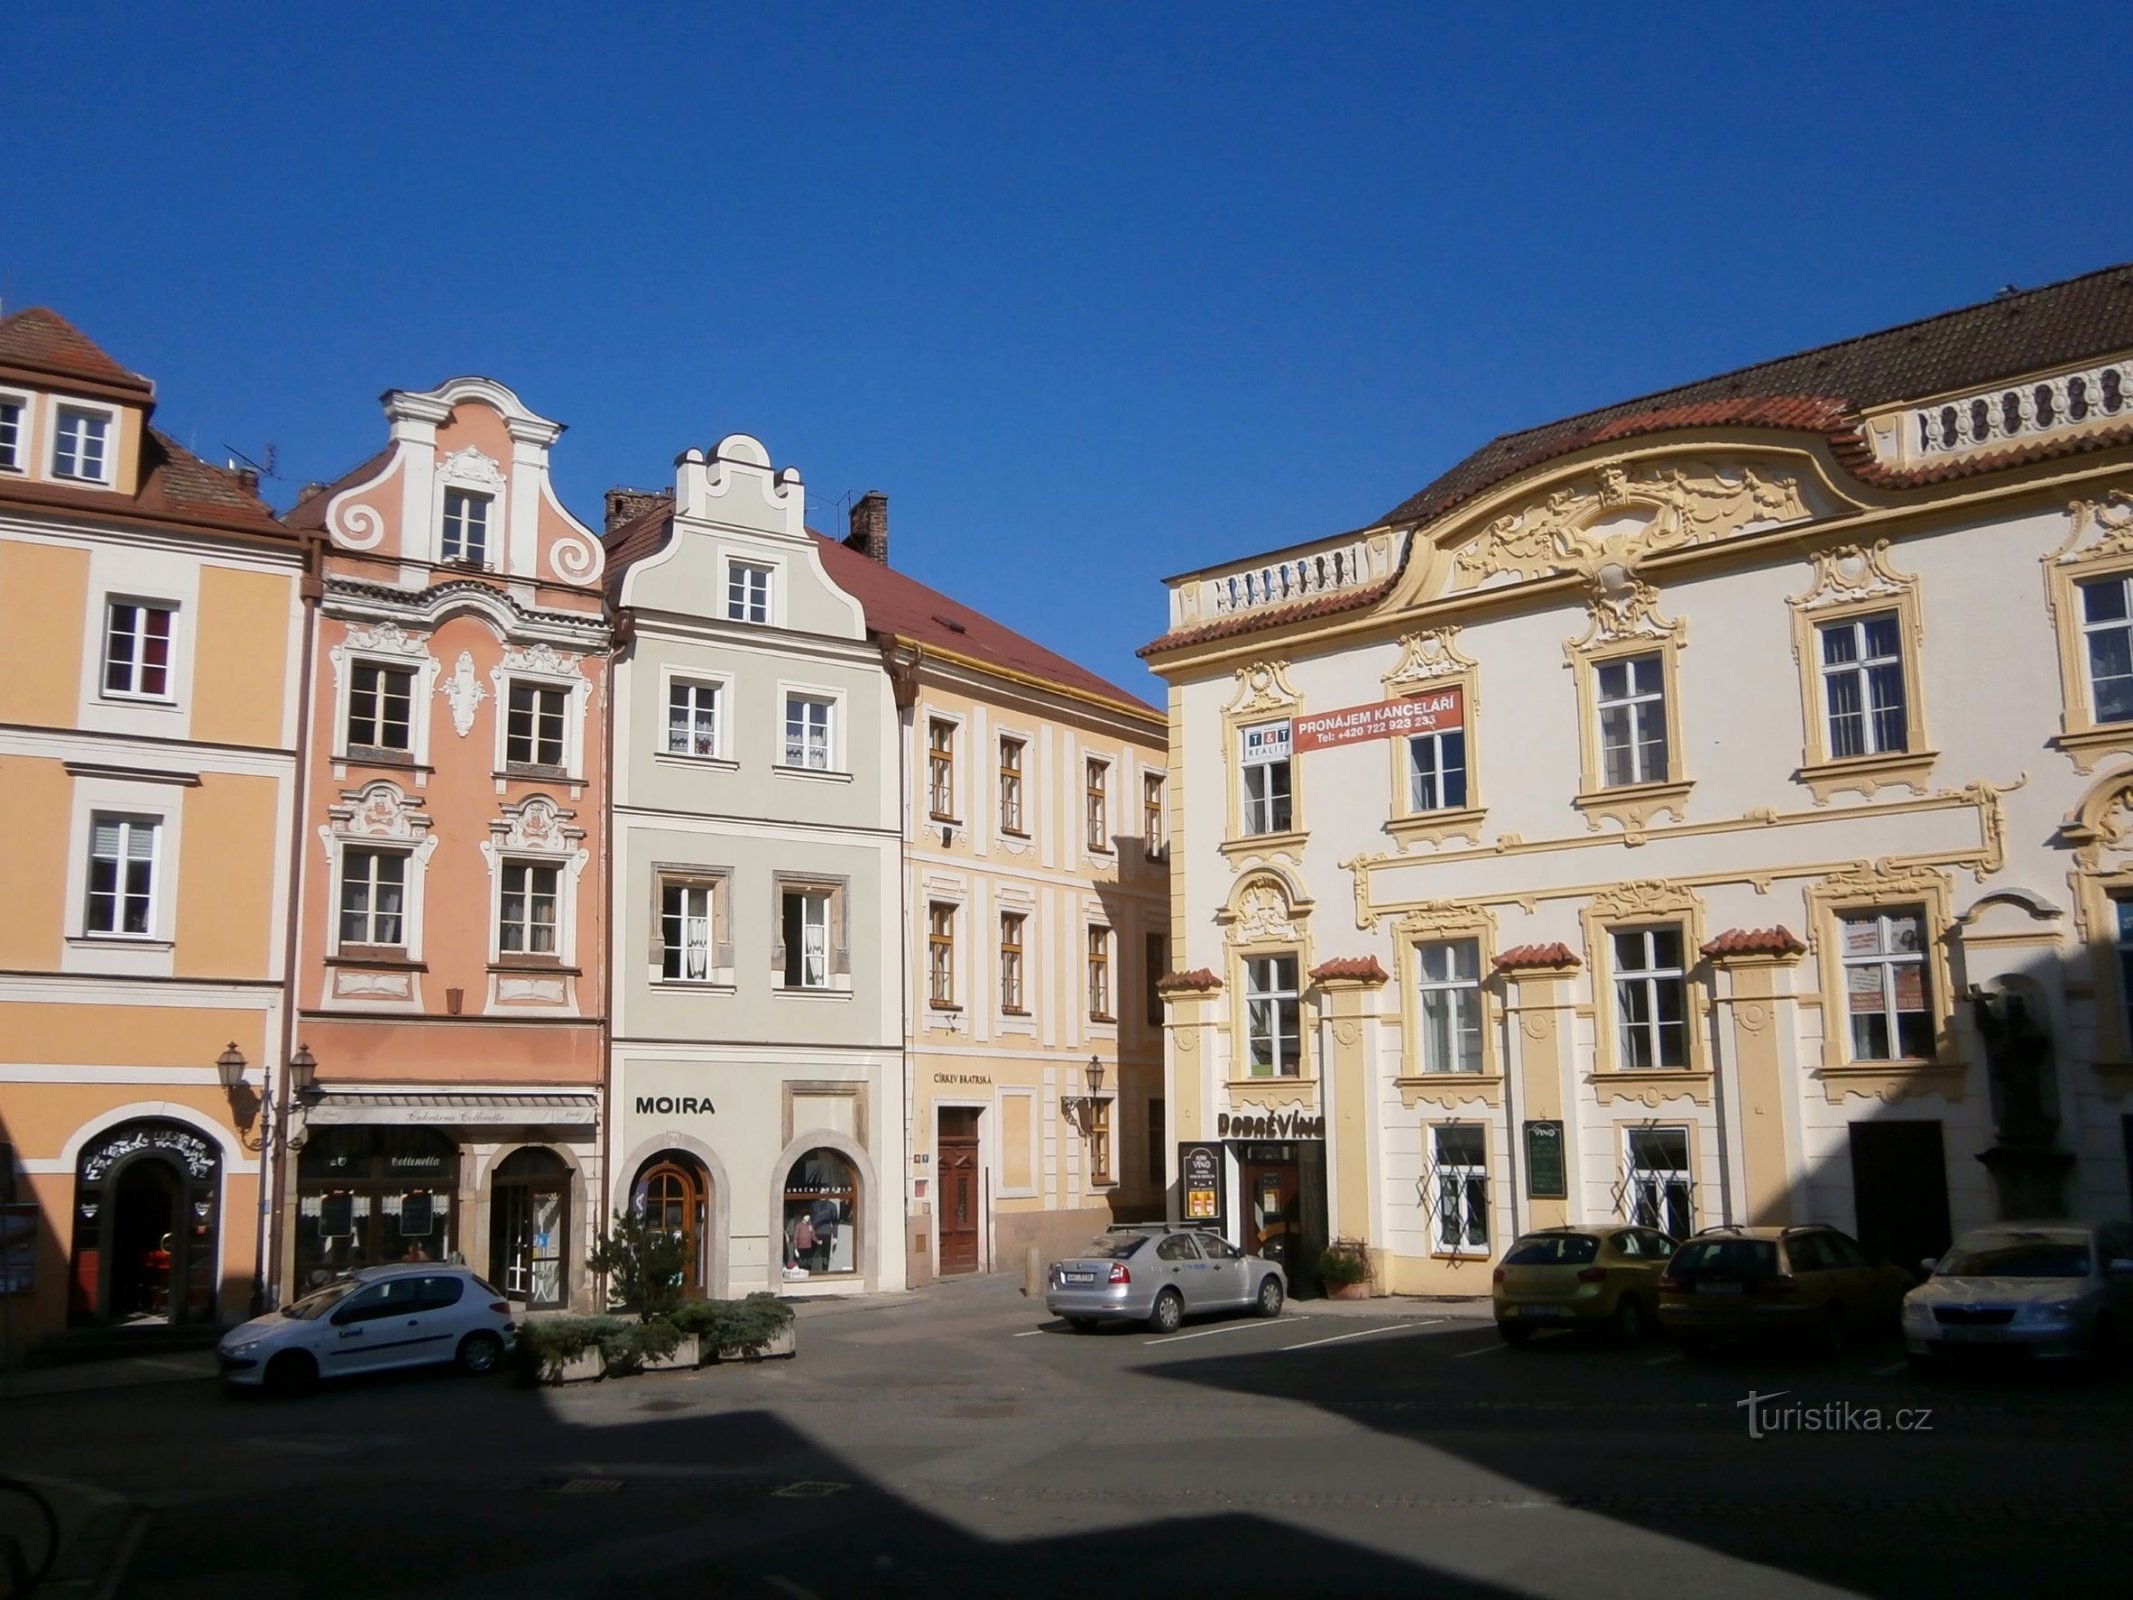 Vista del nº 89 desde la pequeña plaza de la calle V Kopečku (Hradec Králové, 28.3.2014/XNUMX/XNUMX)